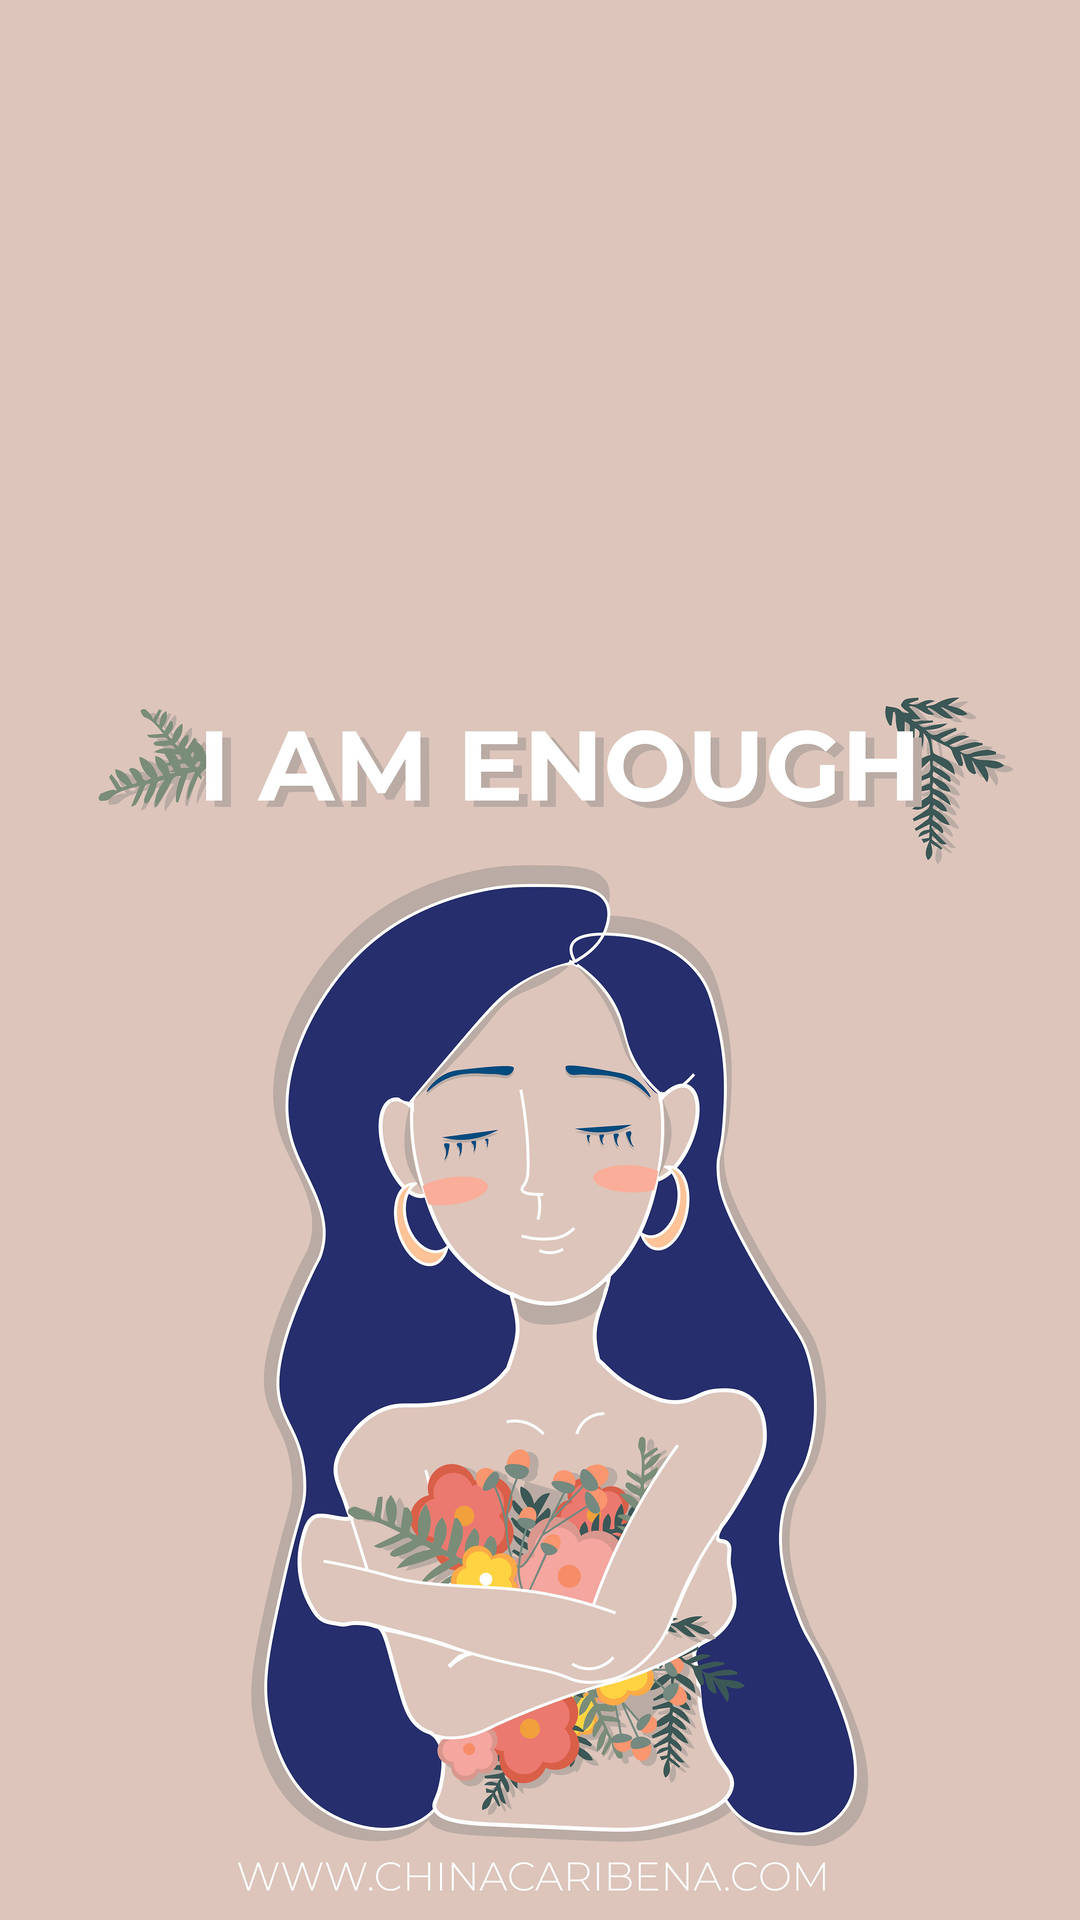 Eusou Suficiente - Eu Sou Suficiente - Eu Sou Suficiente - Eu Sou Suficiente - Eu Sou Suficiente Papel de Parede